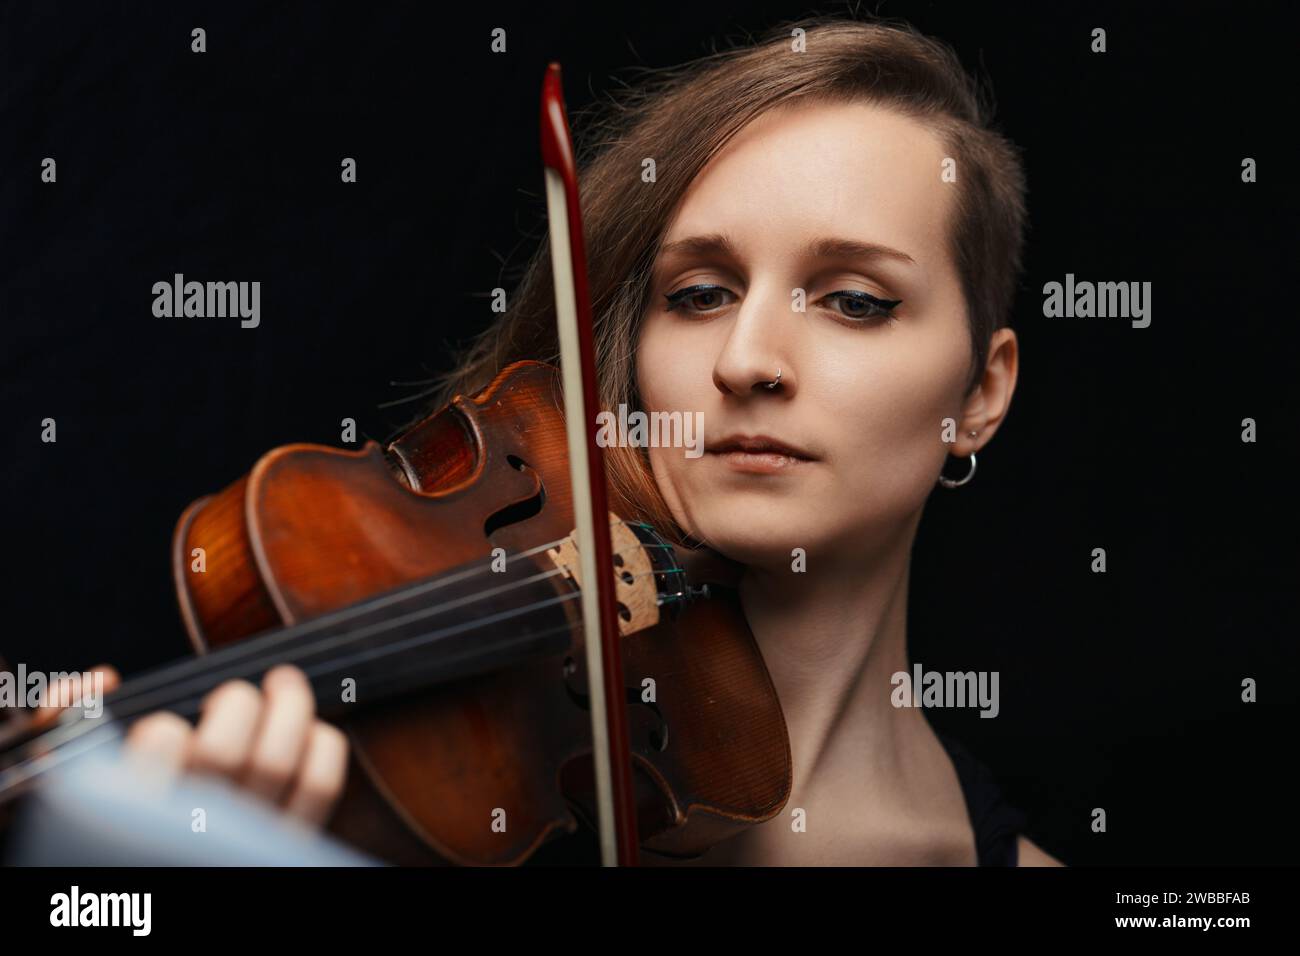 la violoniste, immergée dans sa musique, crée une atmosphère de solennité et de concentration, témoignage de son art. Banque D'Images